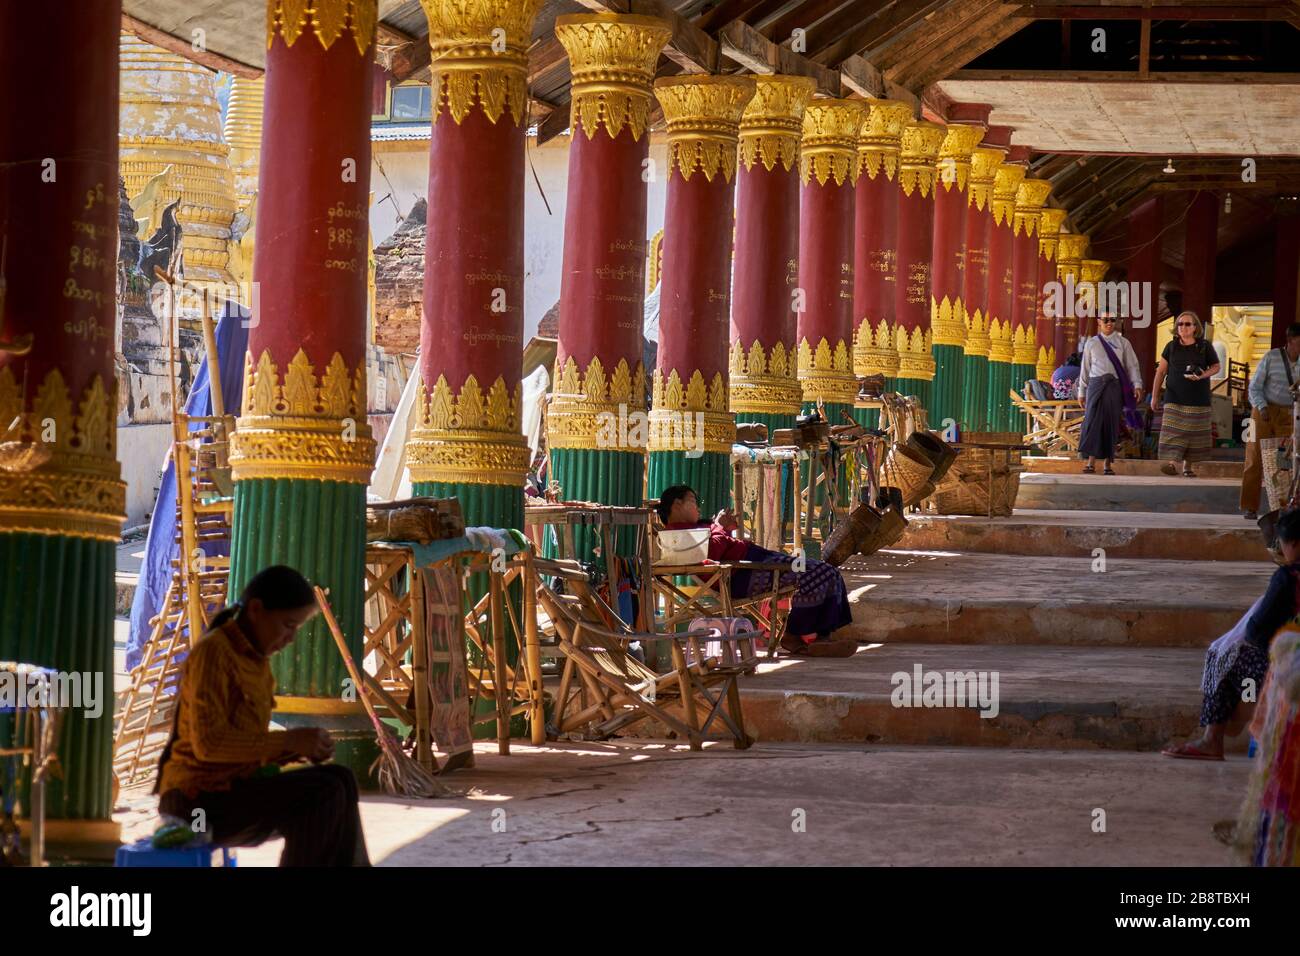 Überdachter Aufgang mit Andenken-Läden, in-Dein-Pagodenwald, Shwe Inn Thein-Pagode, Dorf Indein, Inle See, Shan-Staat, Myanmar Banque D'Images